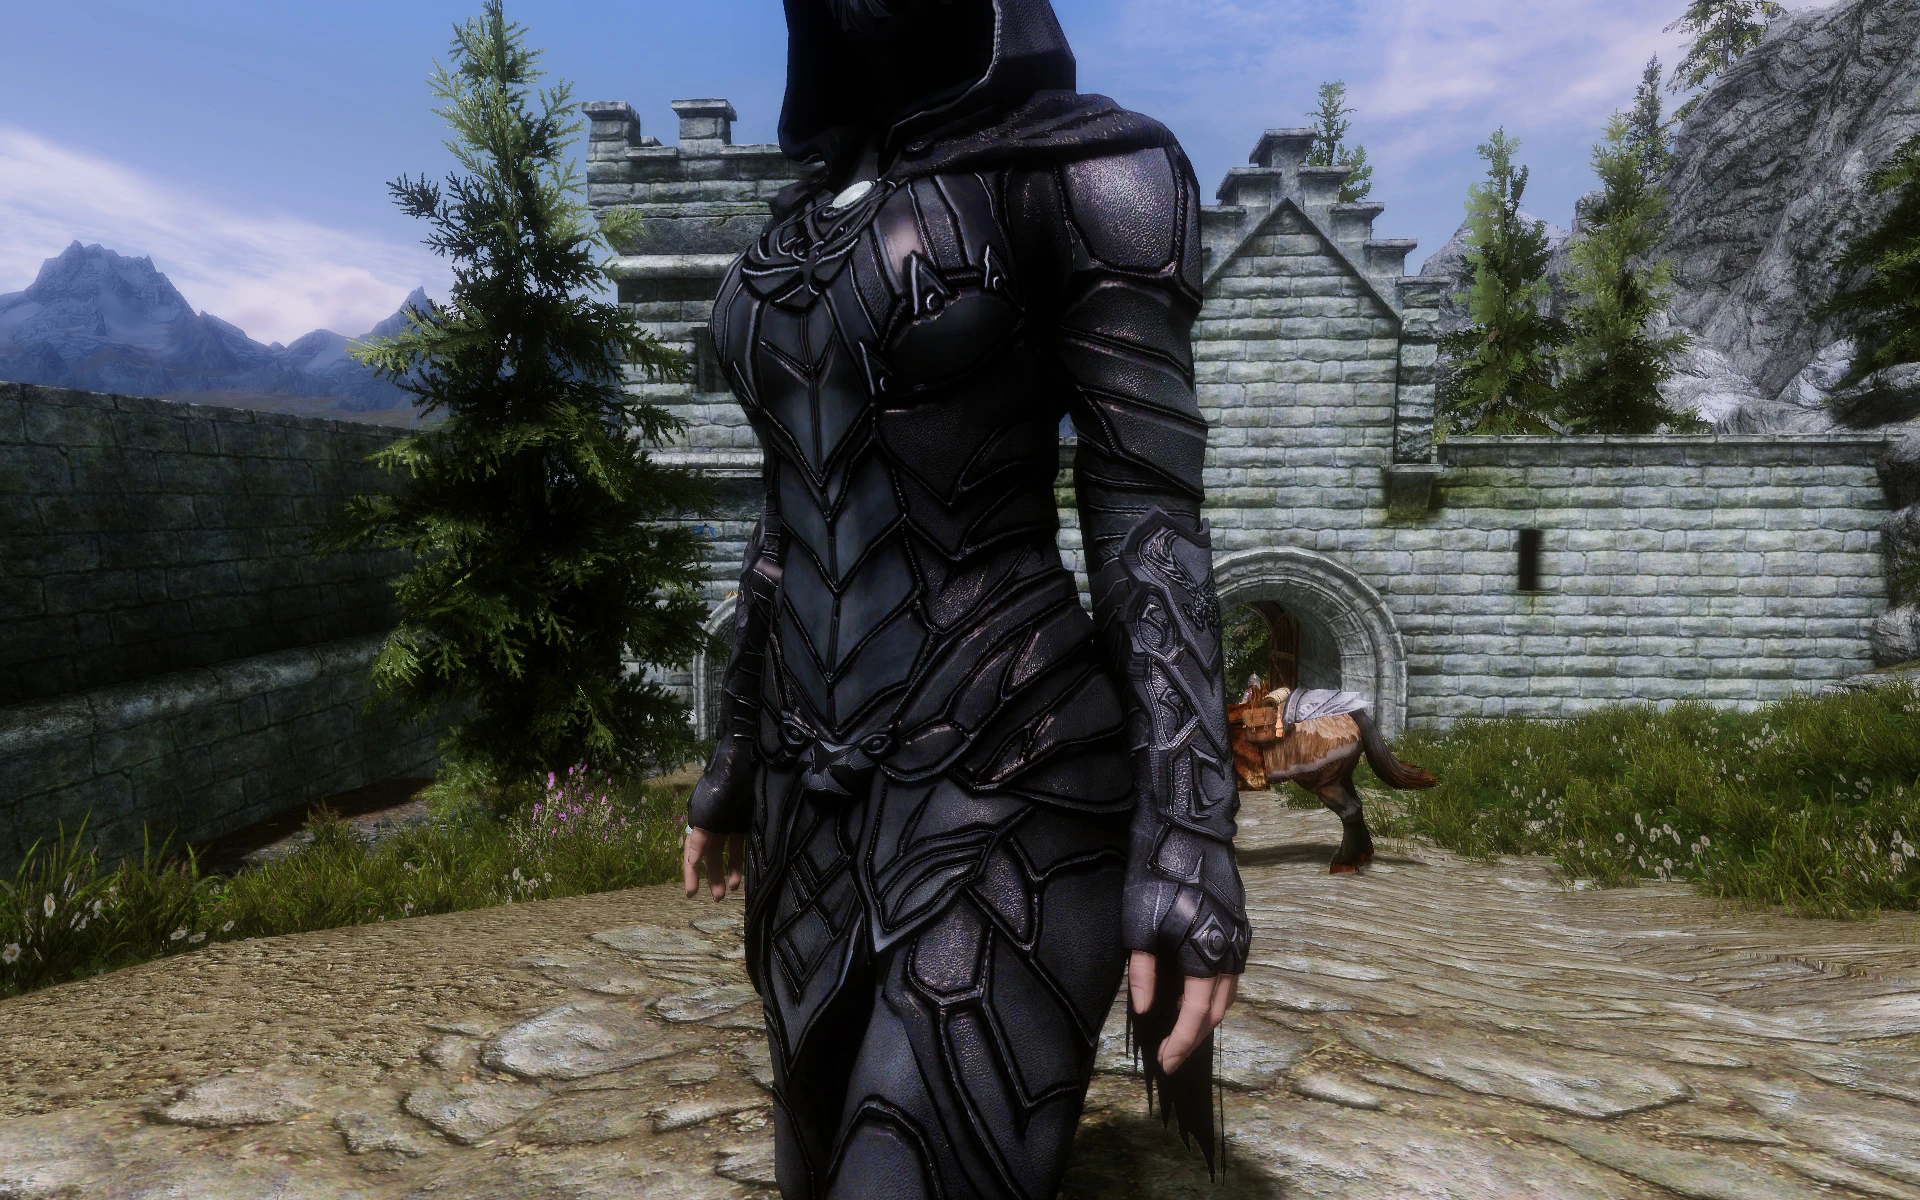 nightingale armor re texture at skyrim nexus mods and community.